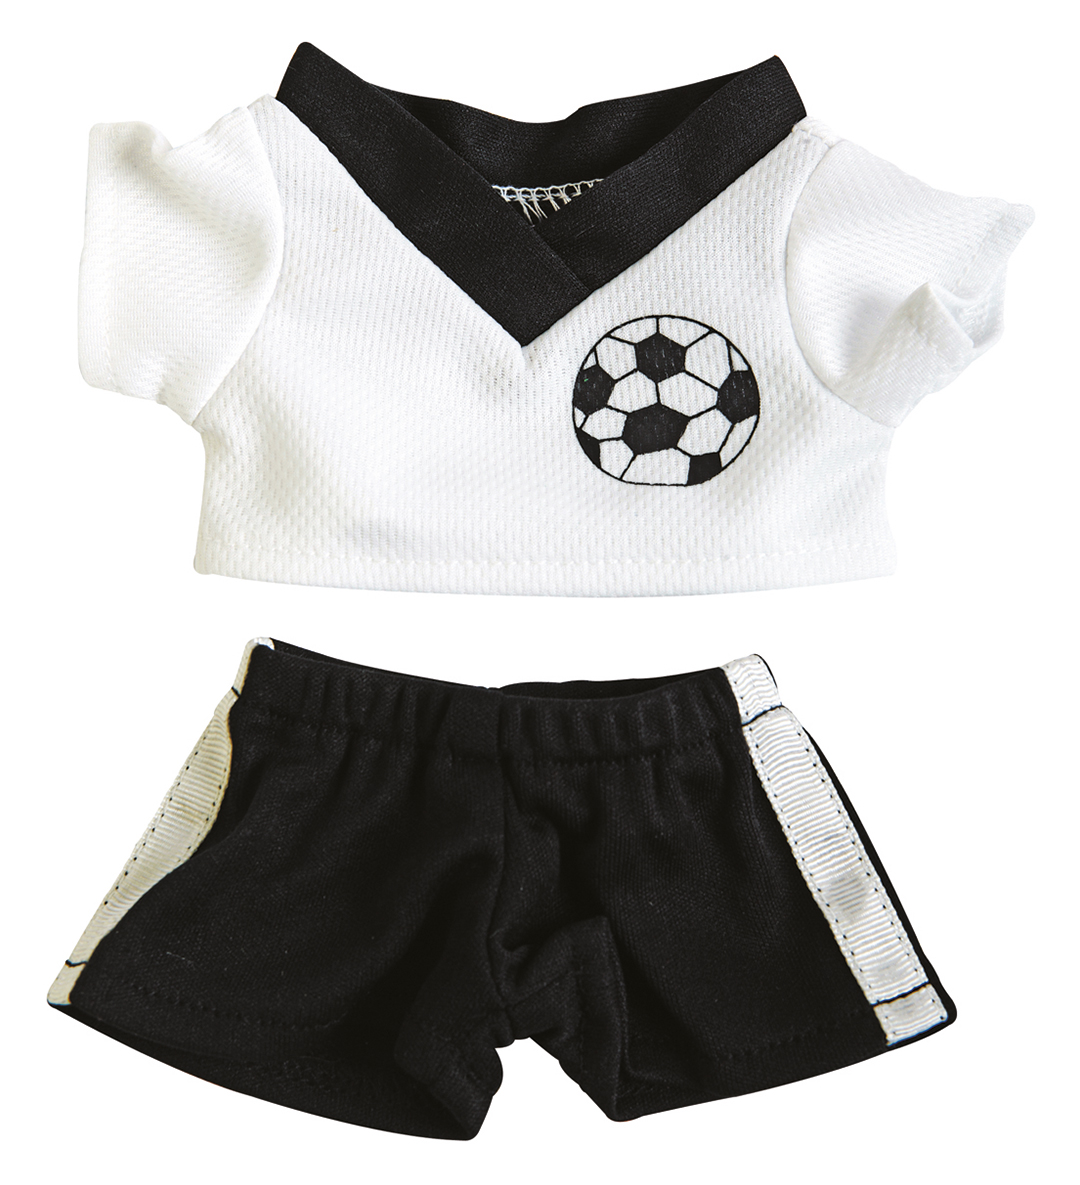 Football kit shirt and shorts